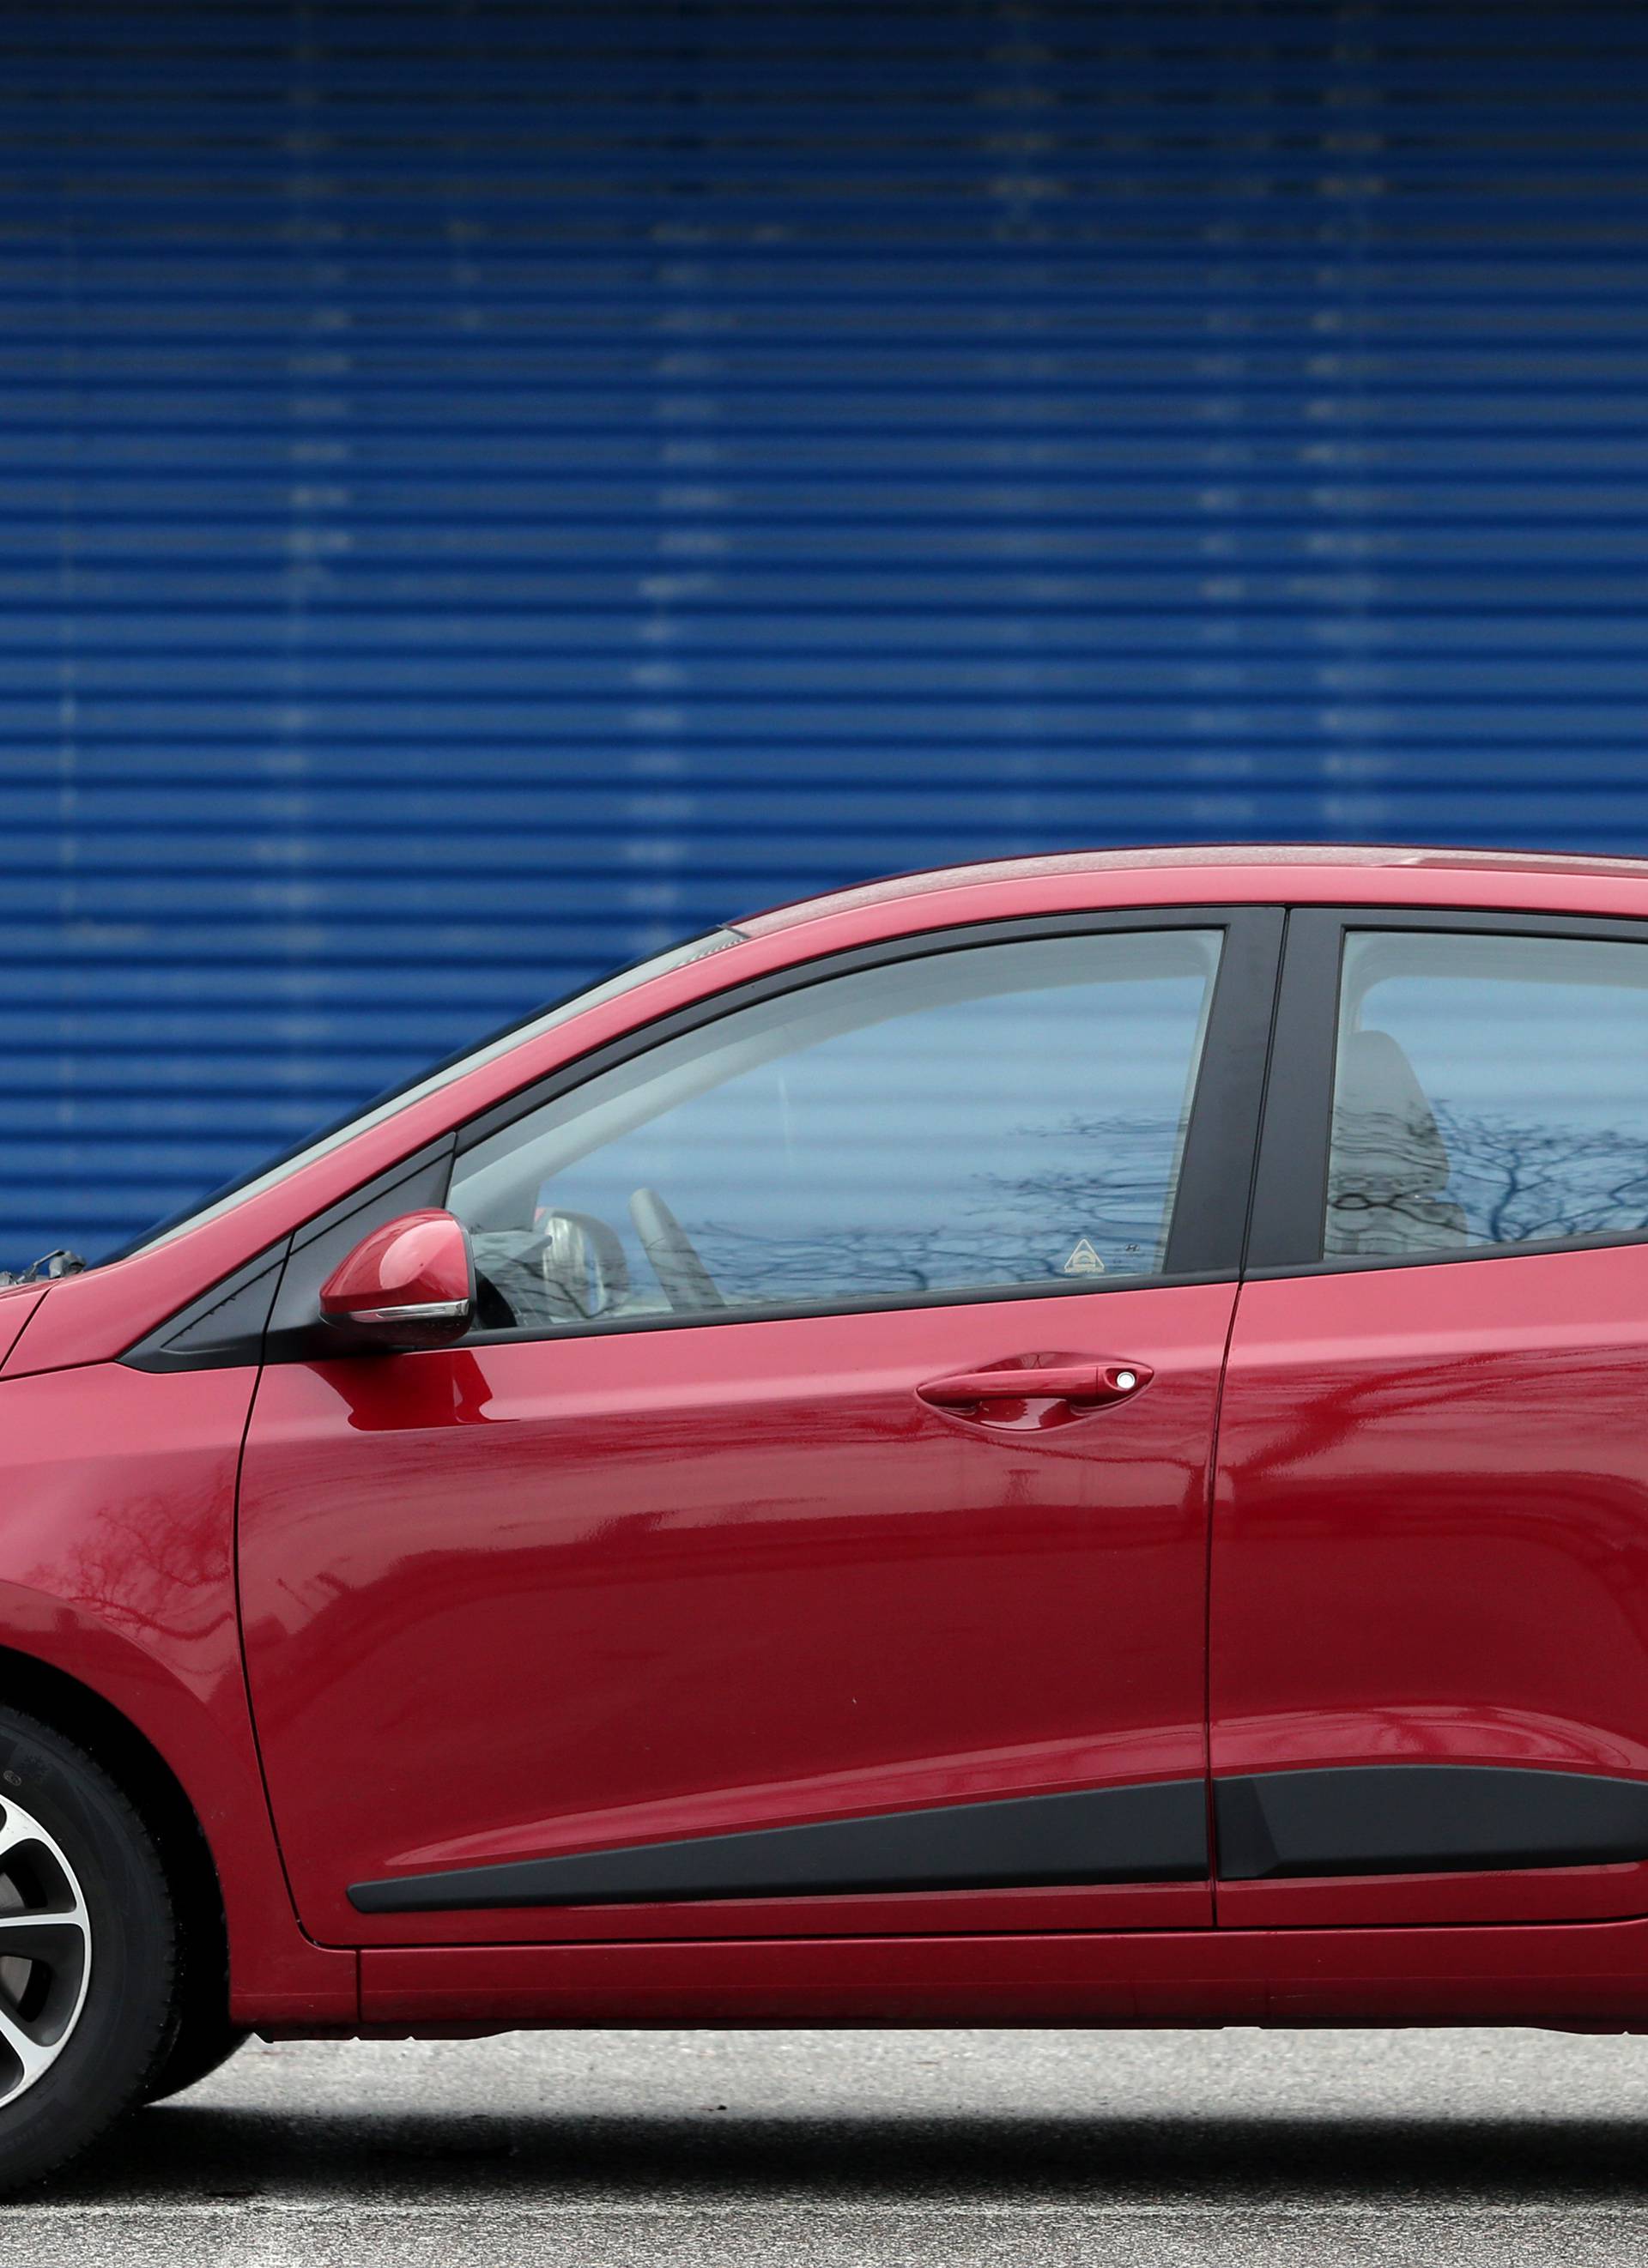 Testirali smo Hyundai i10: Mali gradski auto ozbiljniji od rivala